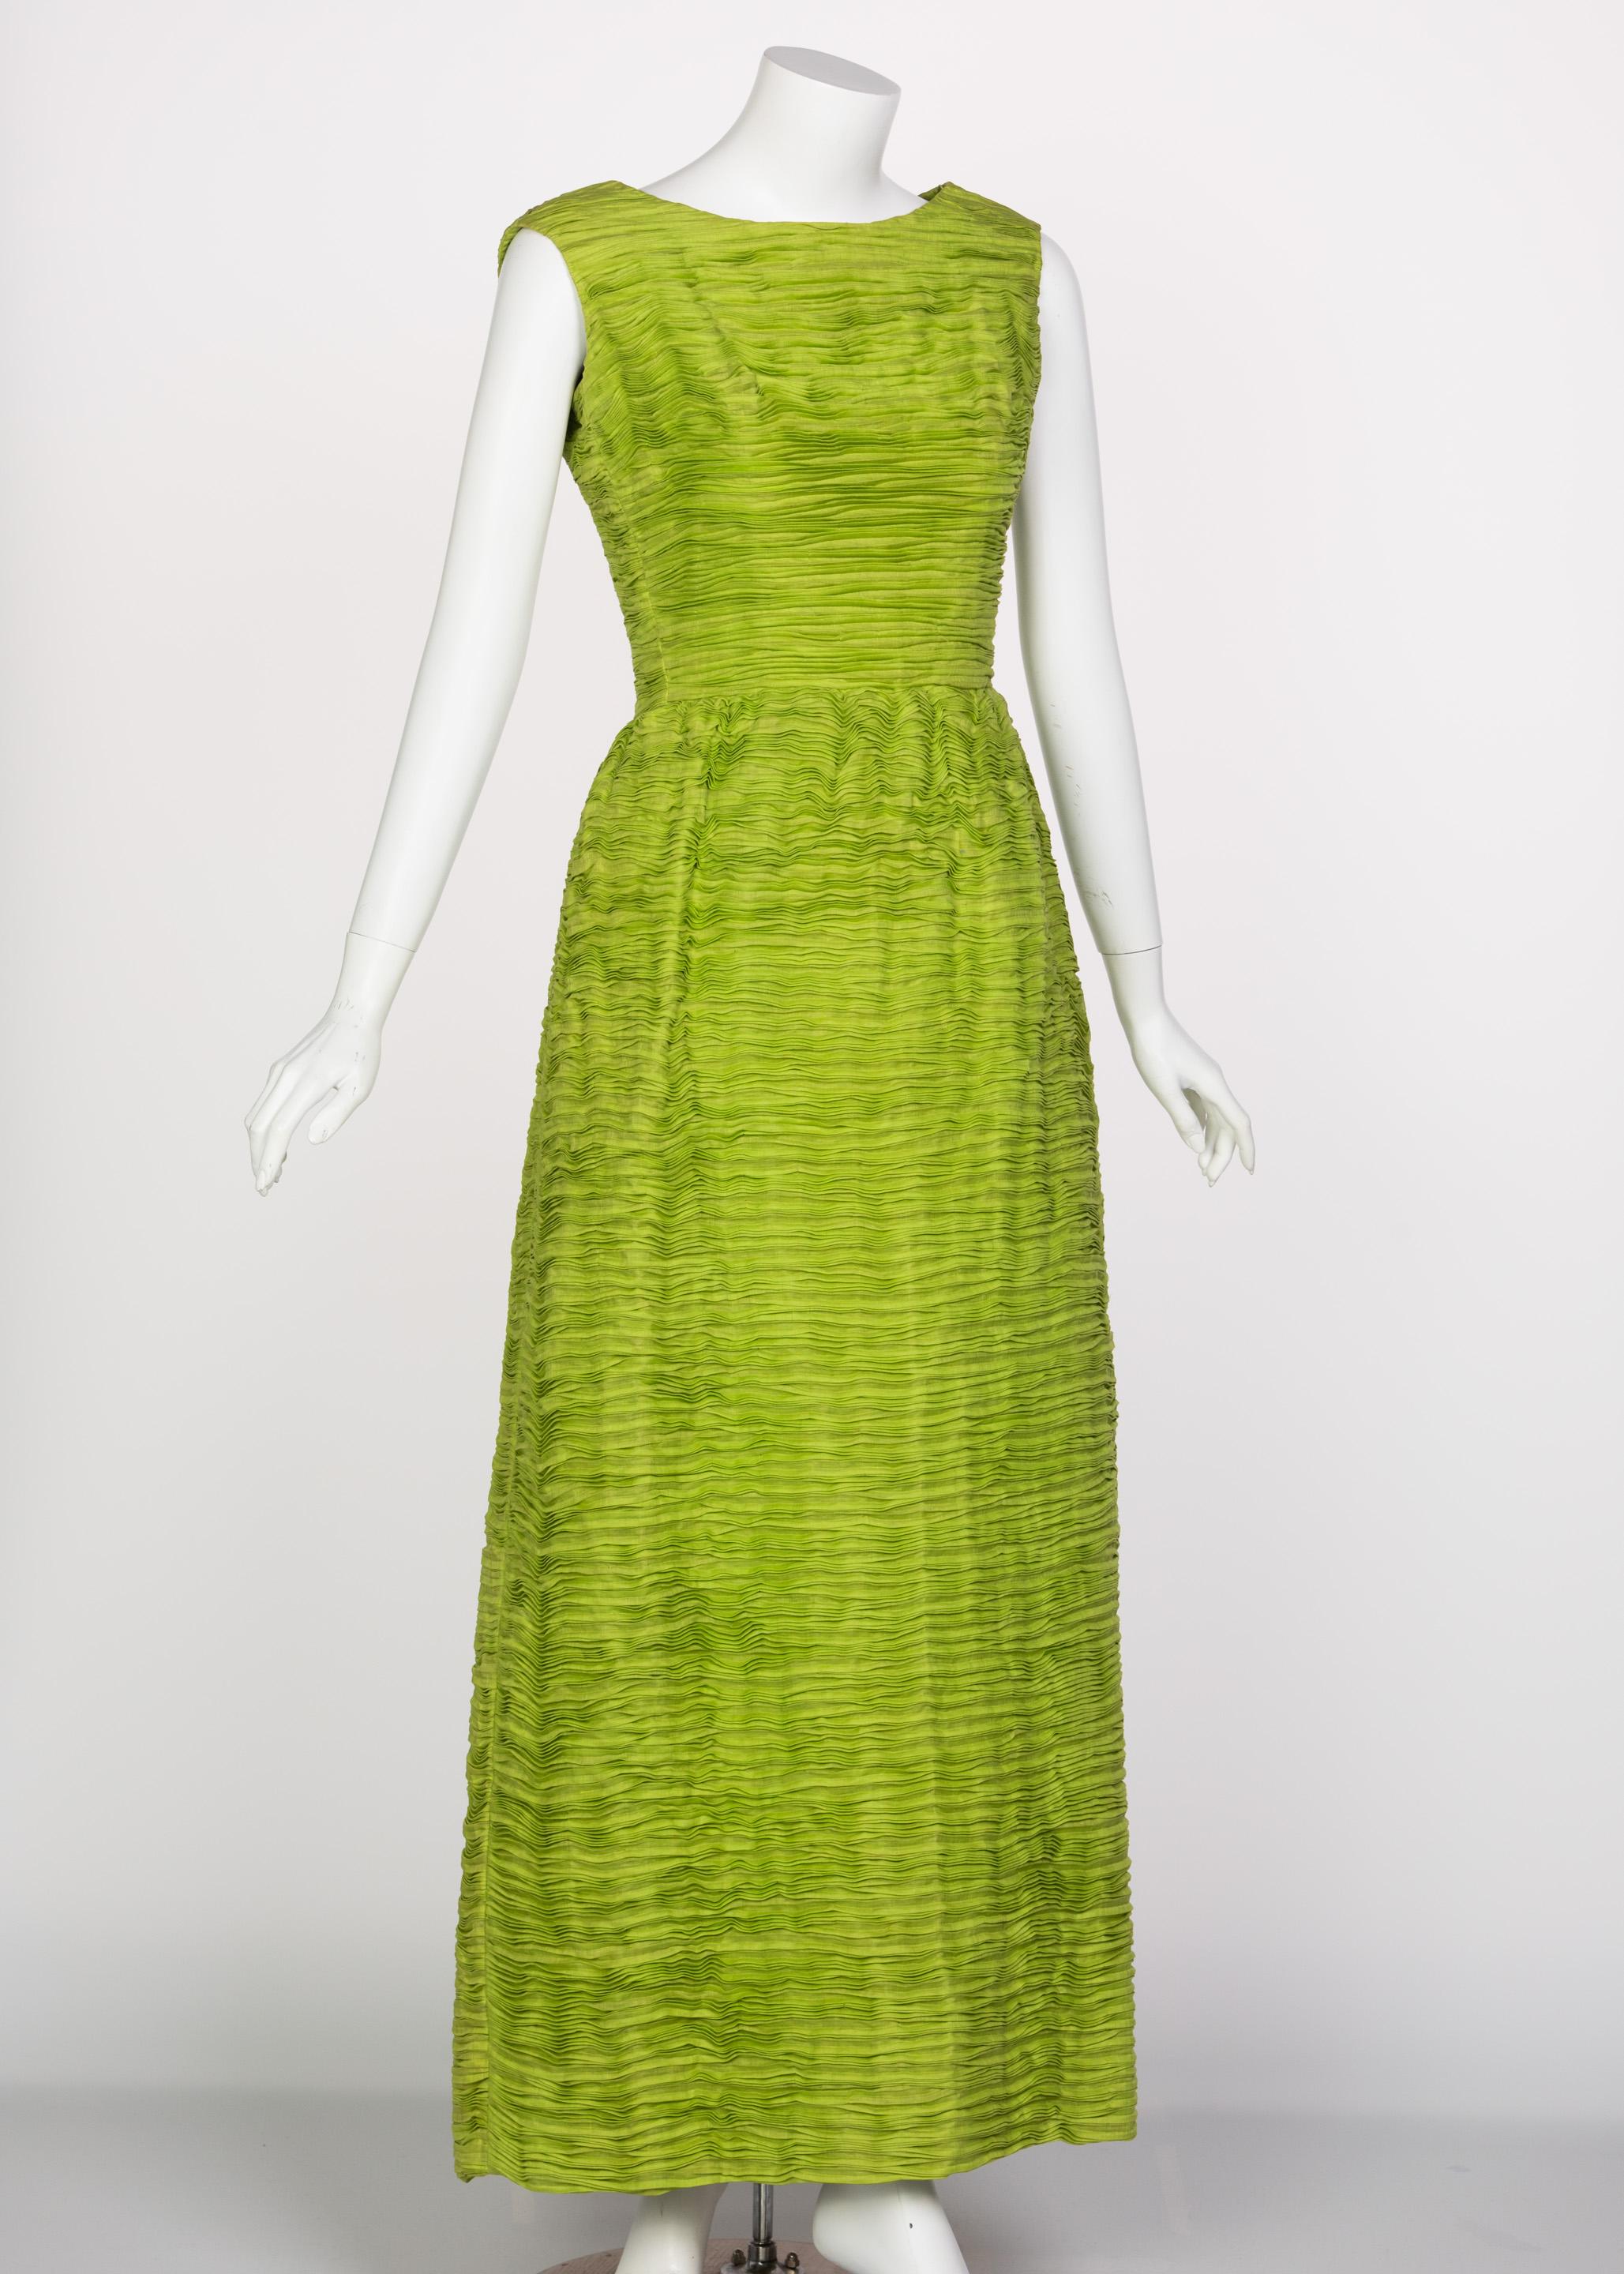 Surnommée la Dior de Dublin, la couturière Sybil Connolly est Revere pour ses créations de haut niveau et ses techniques artisanales. Connaissant un succès fulgurant depuis son premier défilé de mode en 1953, qui lui a valu de faire la couverture du